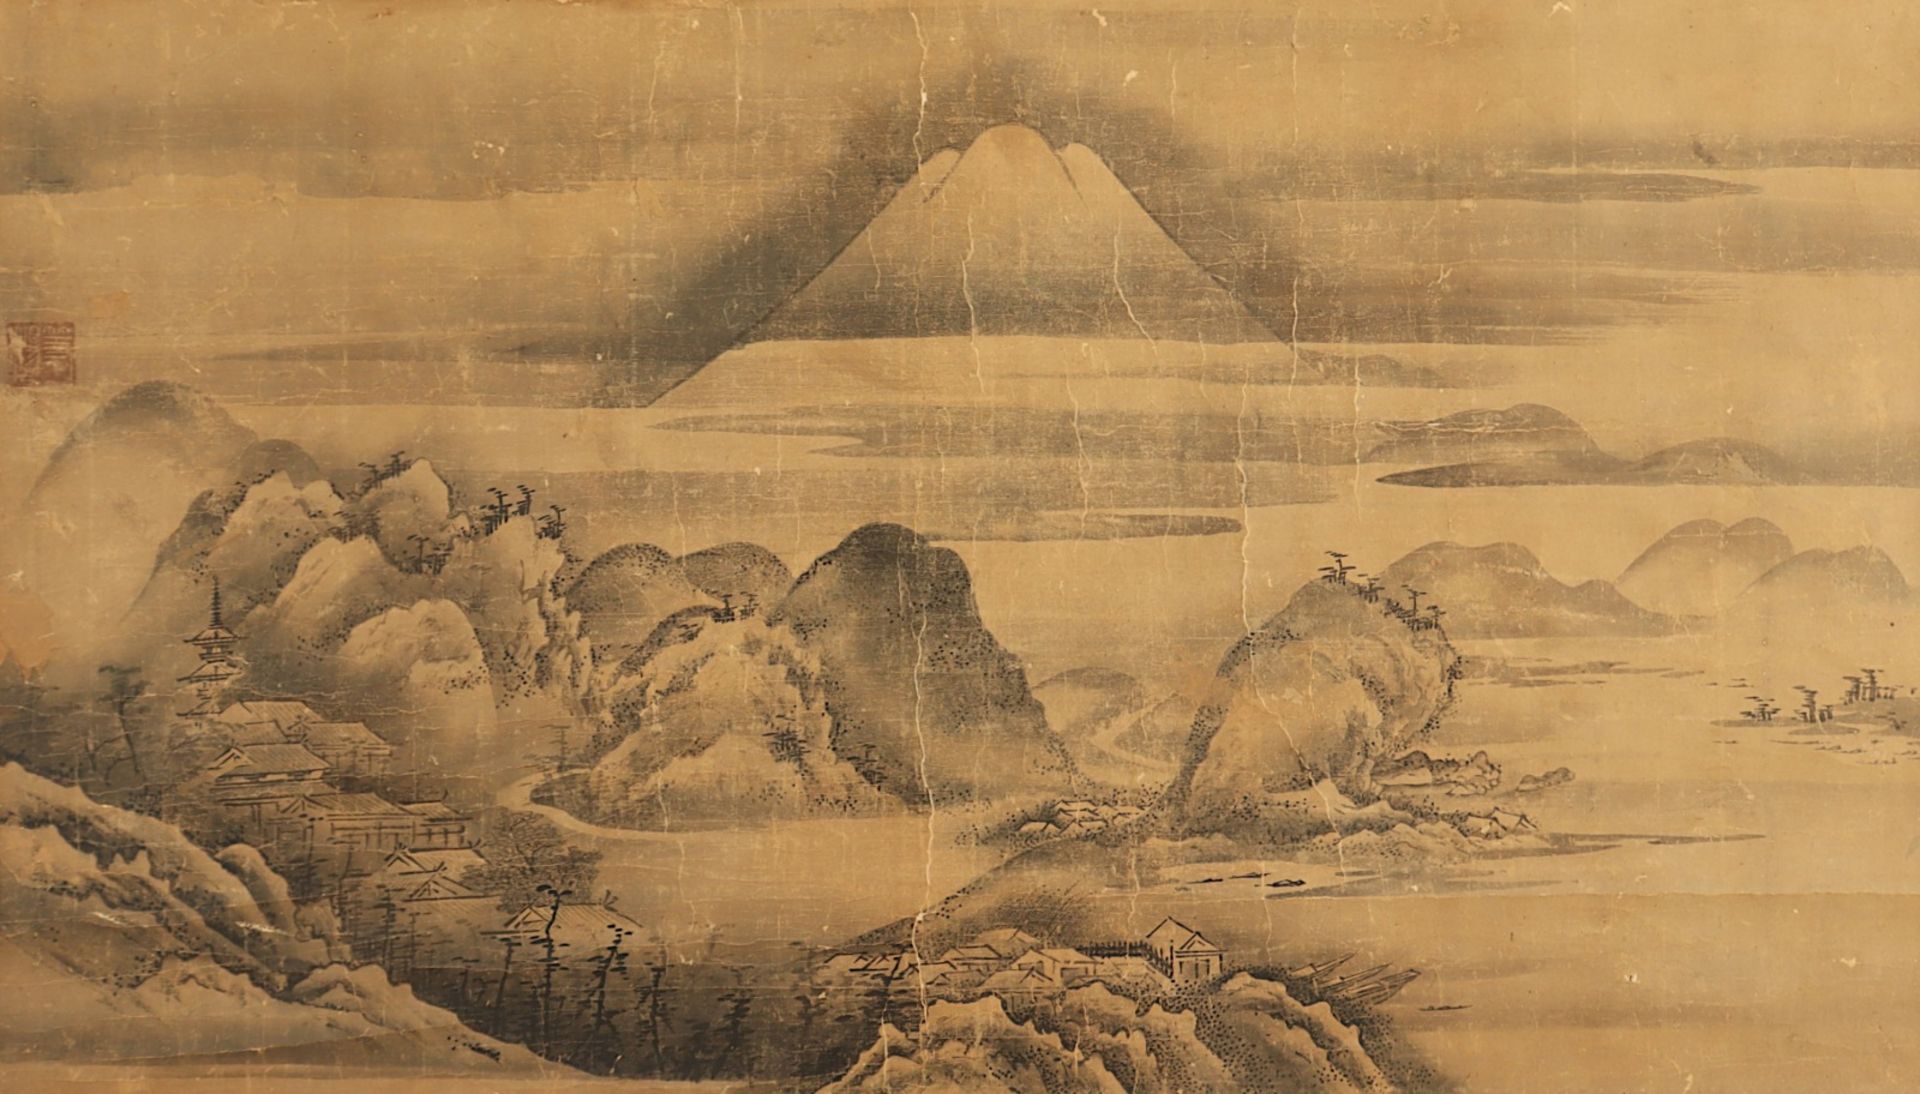 MALEREI, Tusche auf Papier, weite, unter Wolken liegende Landschaft mit Gebäuden und dem Berg Fuji, - Bild 2 aus 4